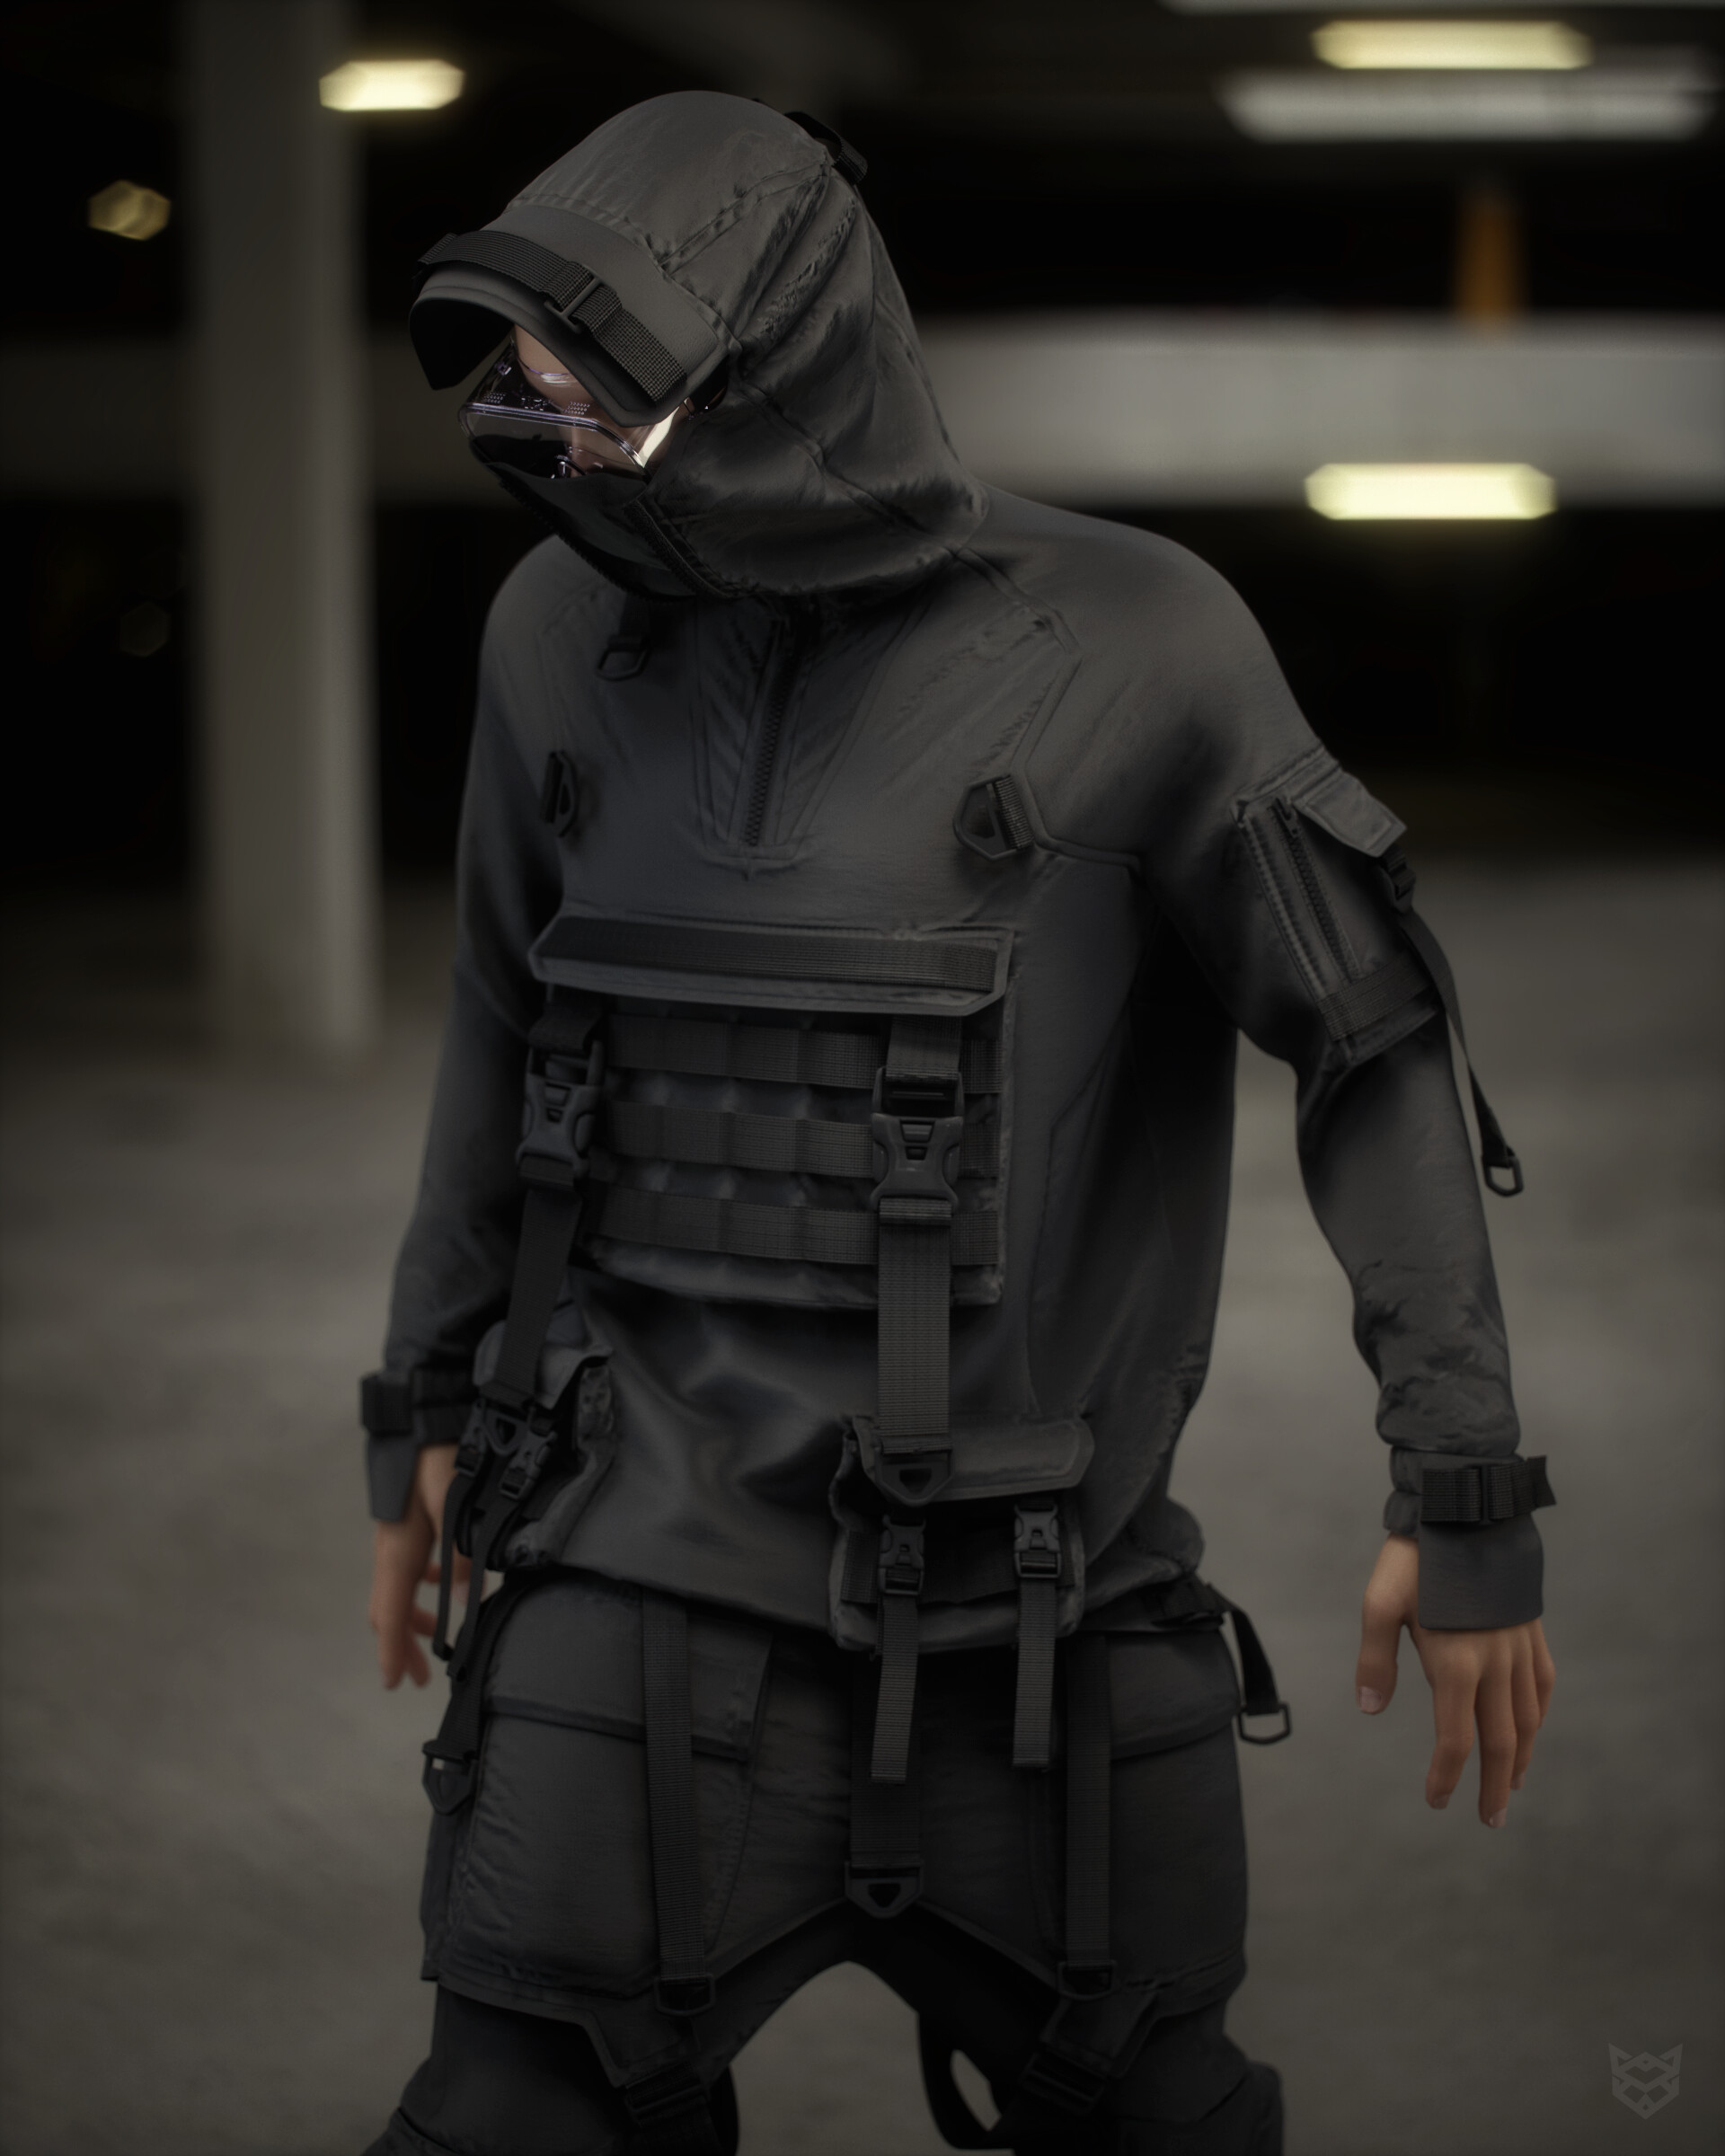 ArtStation - cyberpunk outfit male